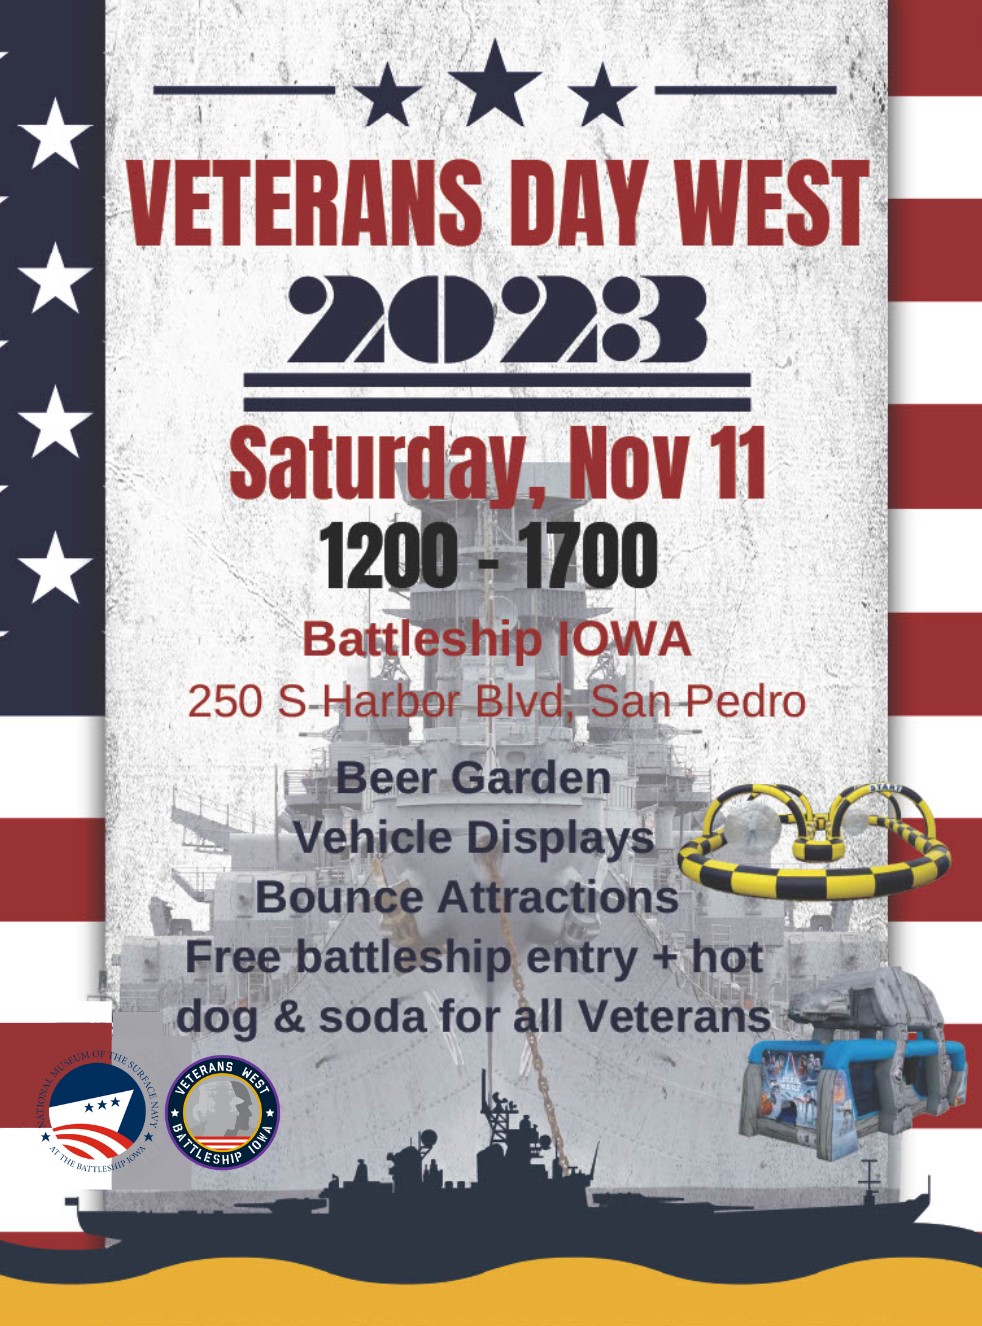 Veterans Day Events at Battleship IOWA – Battleship USS Iowa Museum